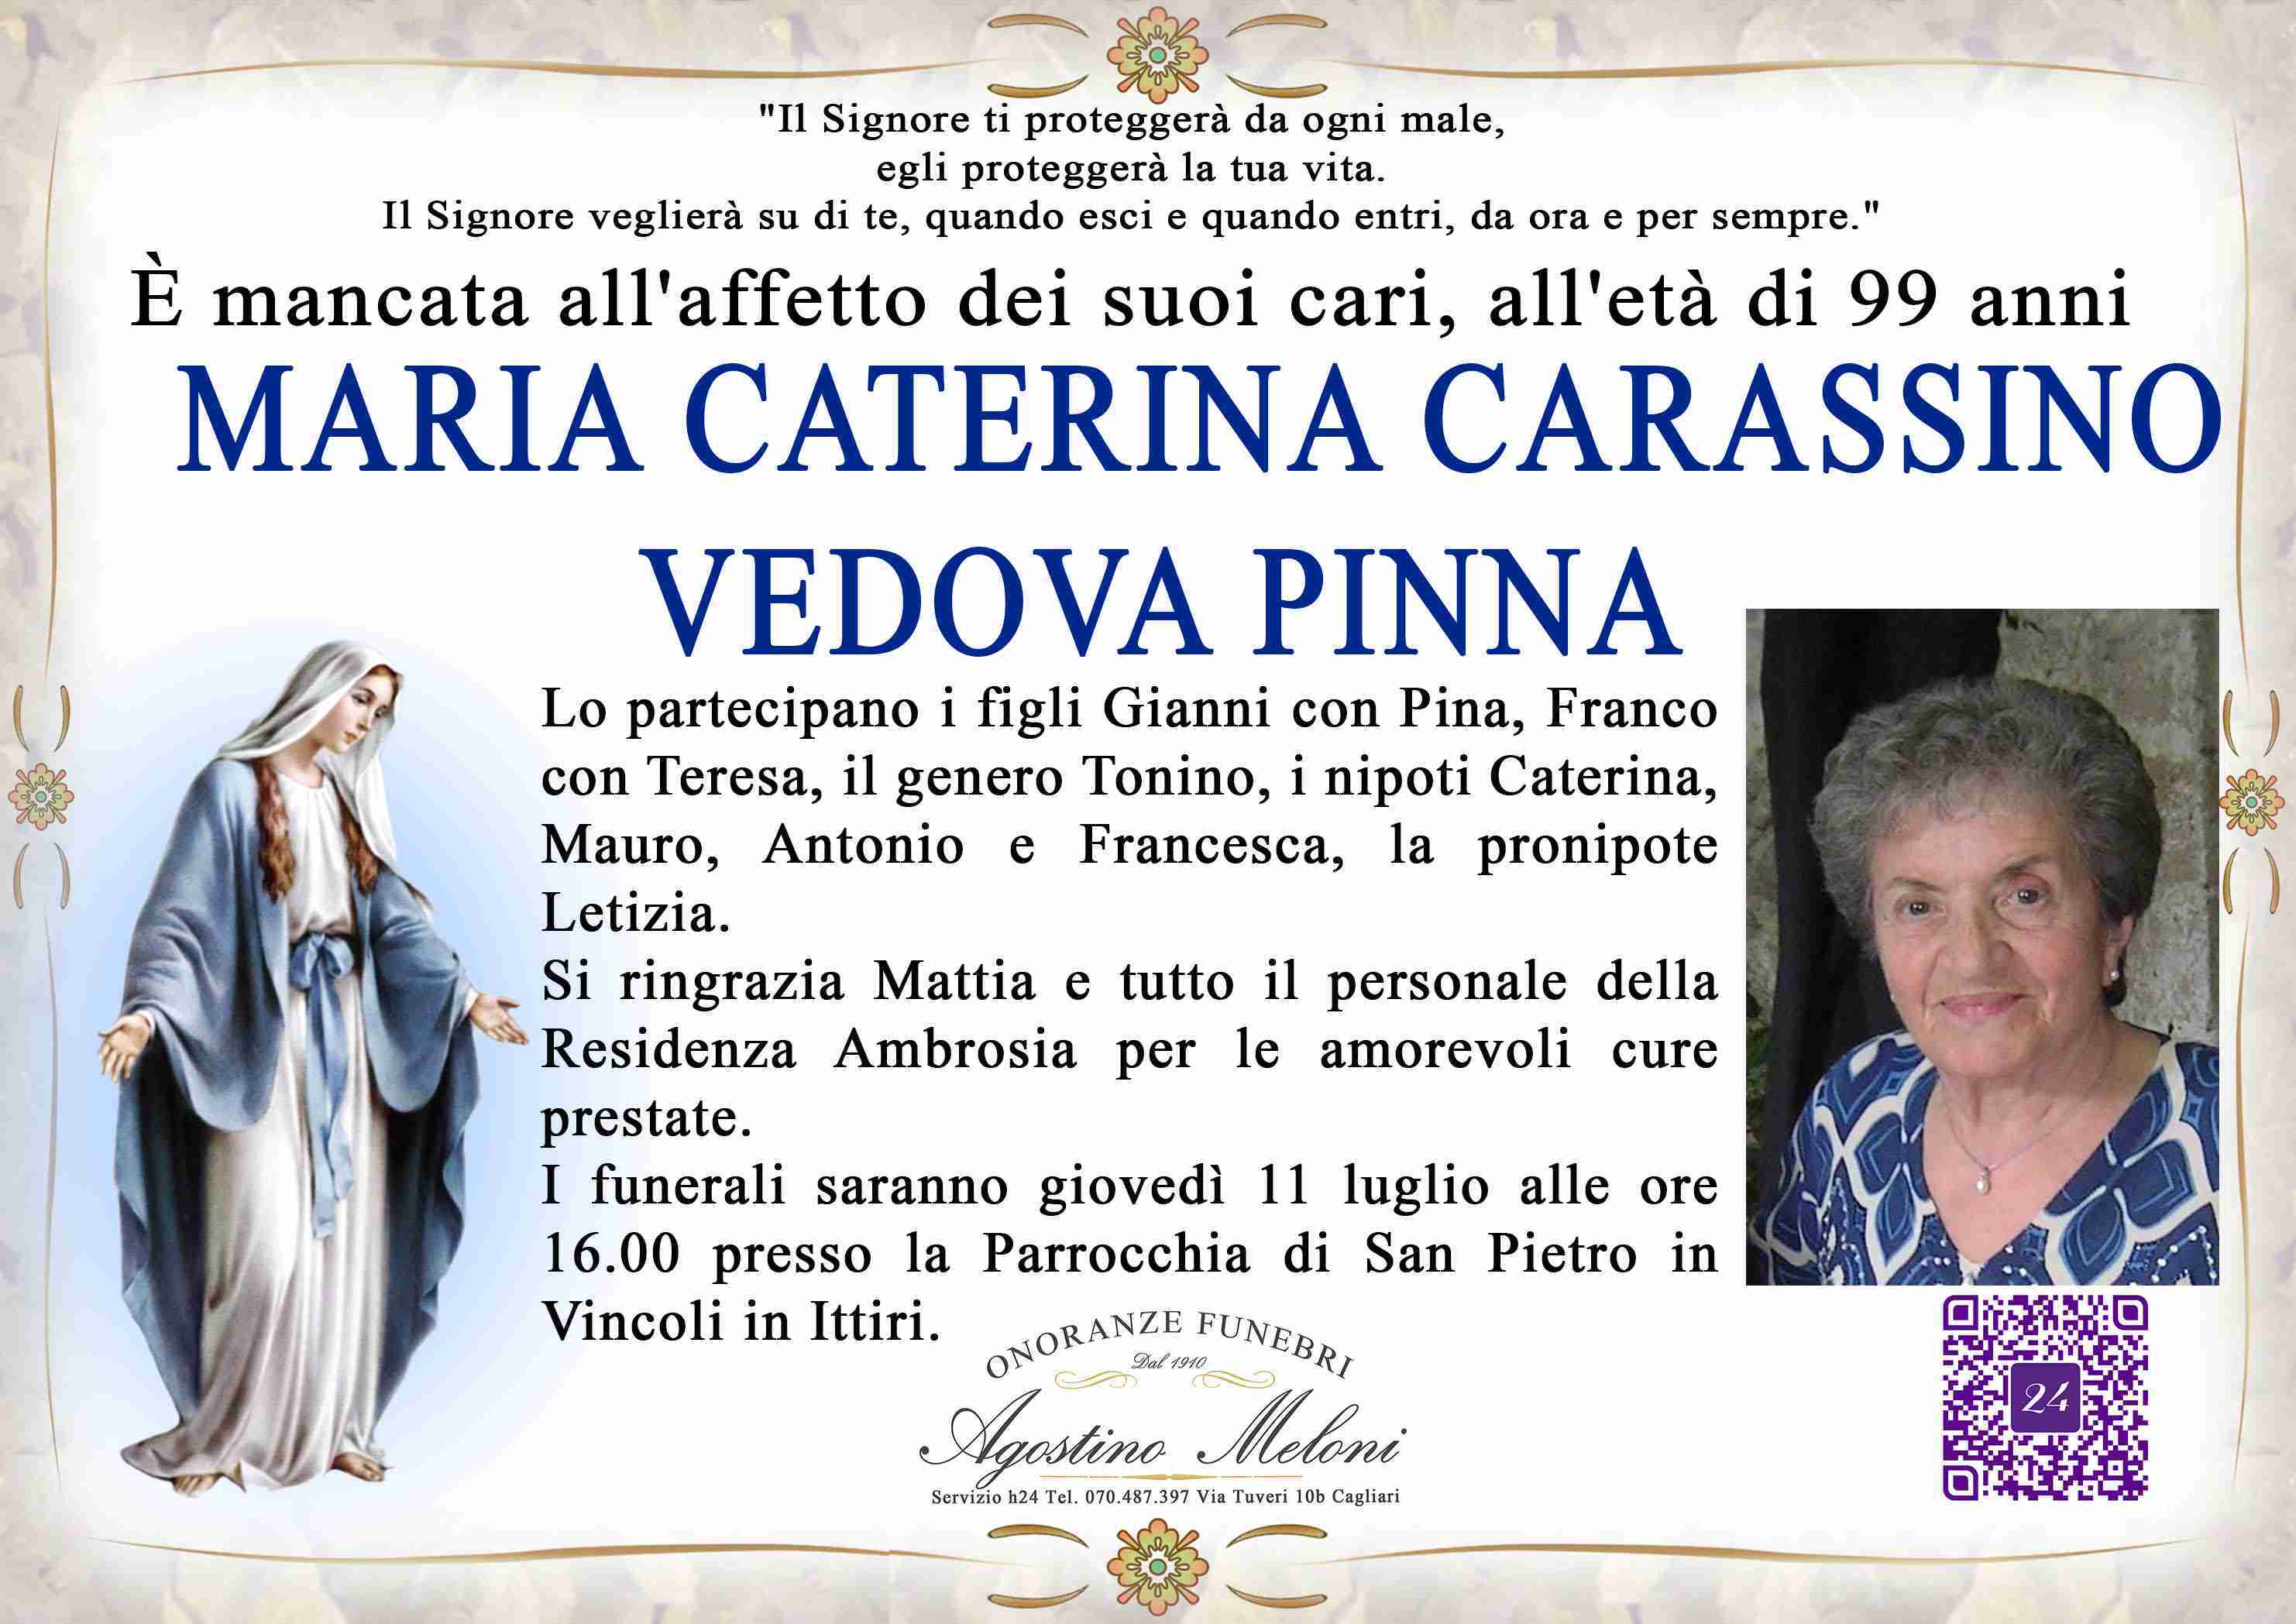 Maria Caterina Carassino